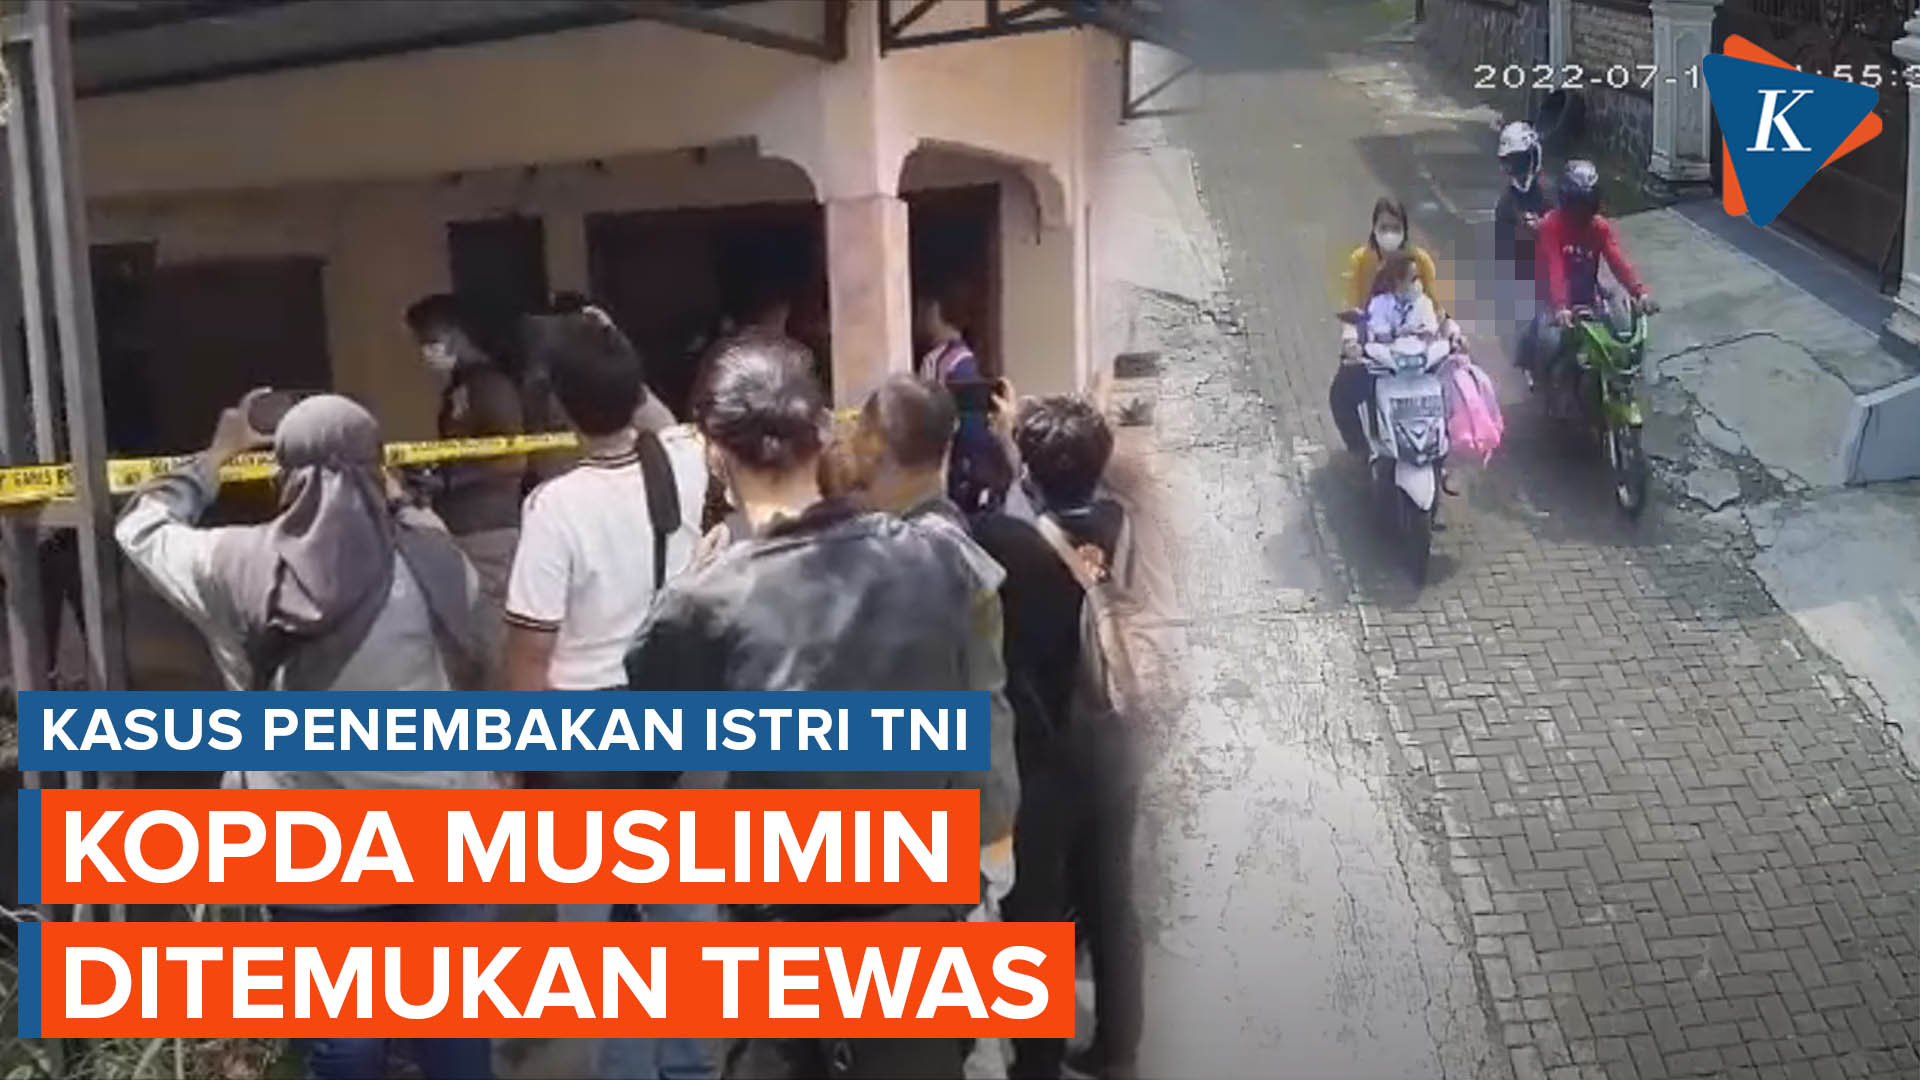 Kopda Muslimin yang Diduga Dalangi Penembakan Istri di Semarang Ditemukan Tewas